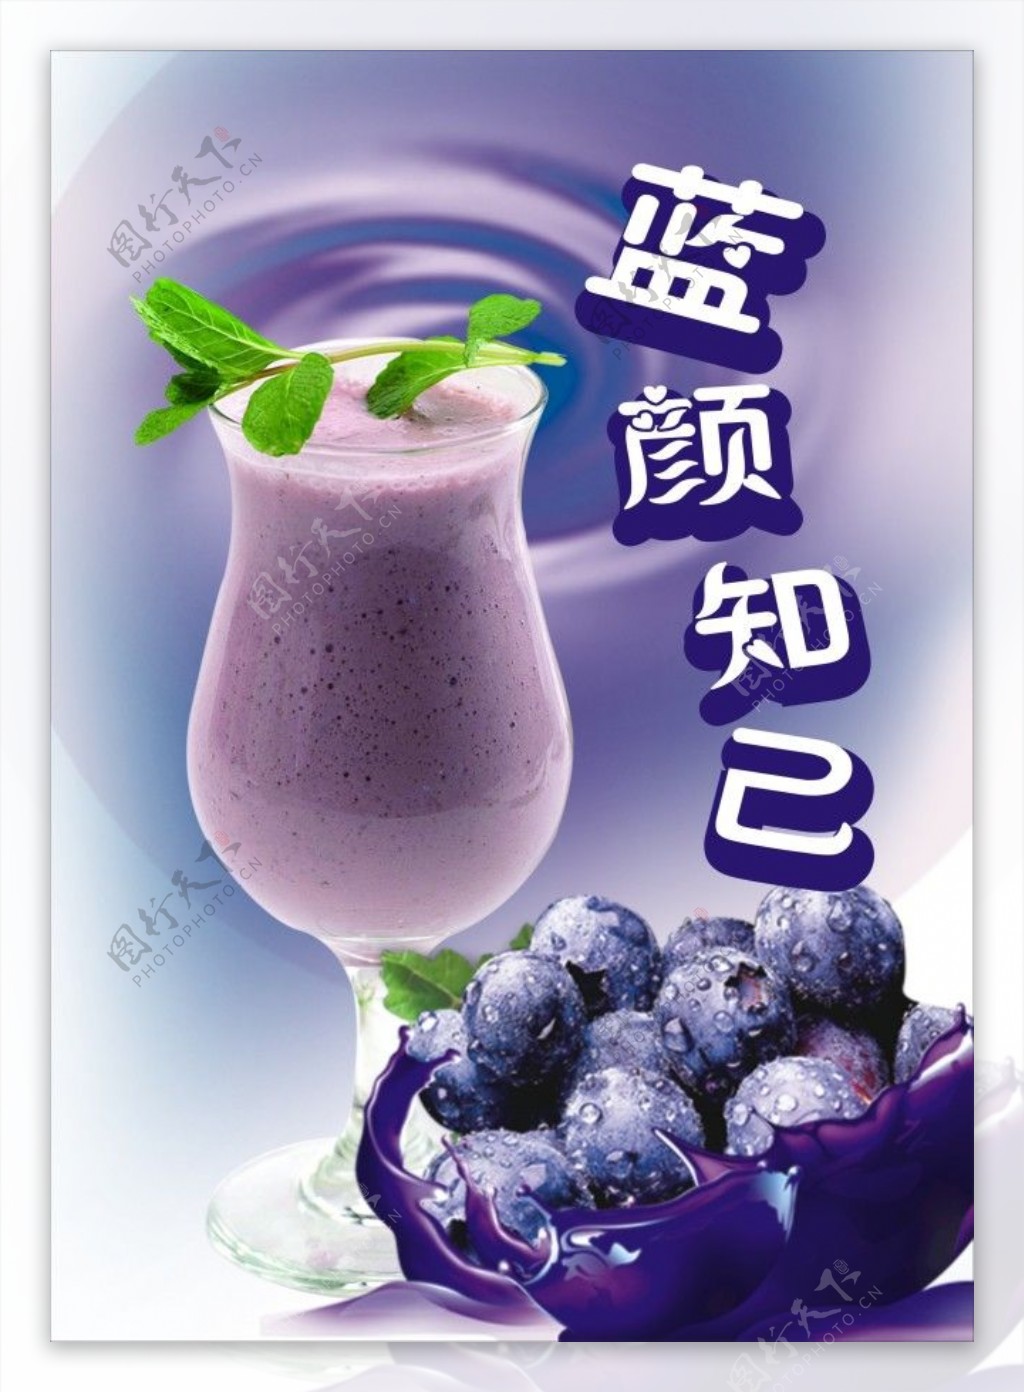 蓝莓果汁图片素材下载蓝莓果汁蓝莓